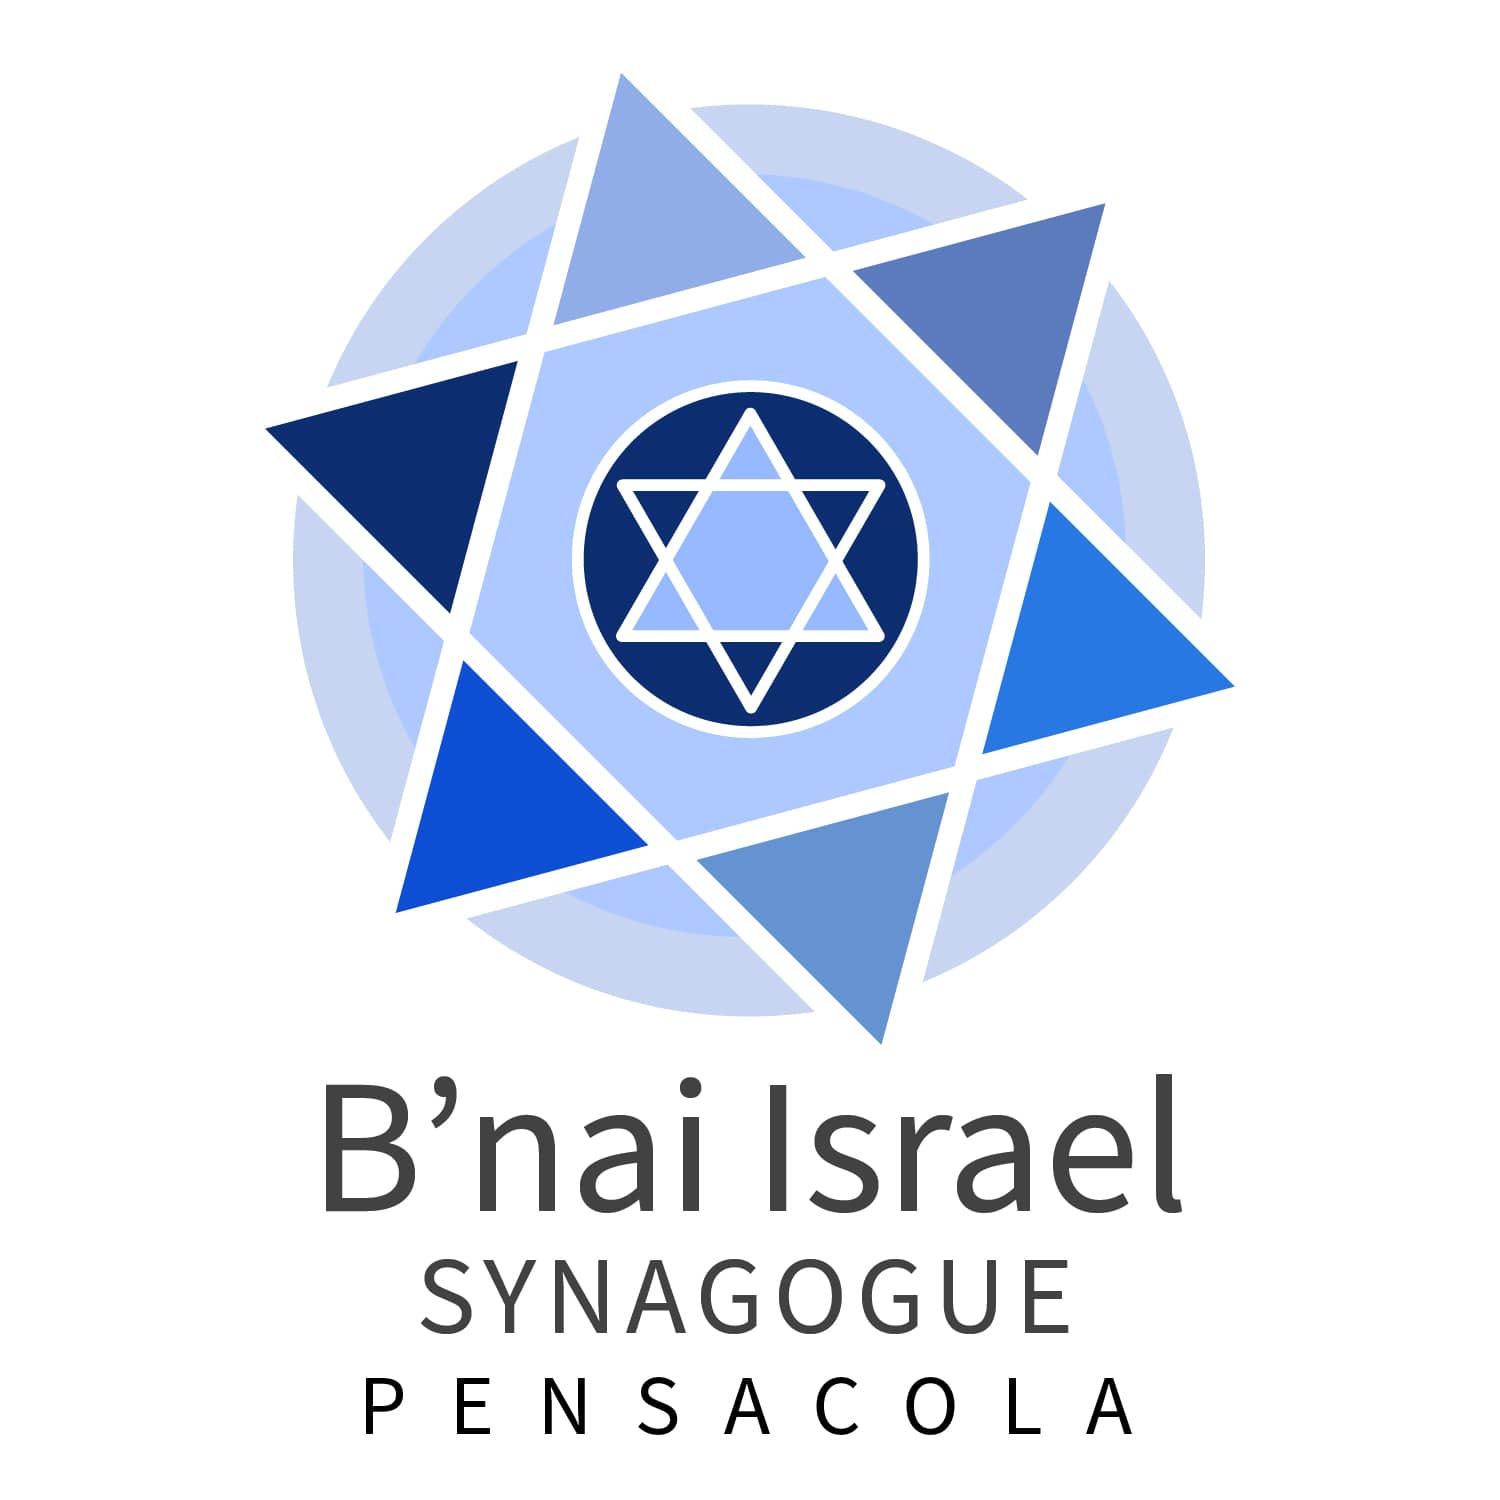 B'nai Israel Pensacola